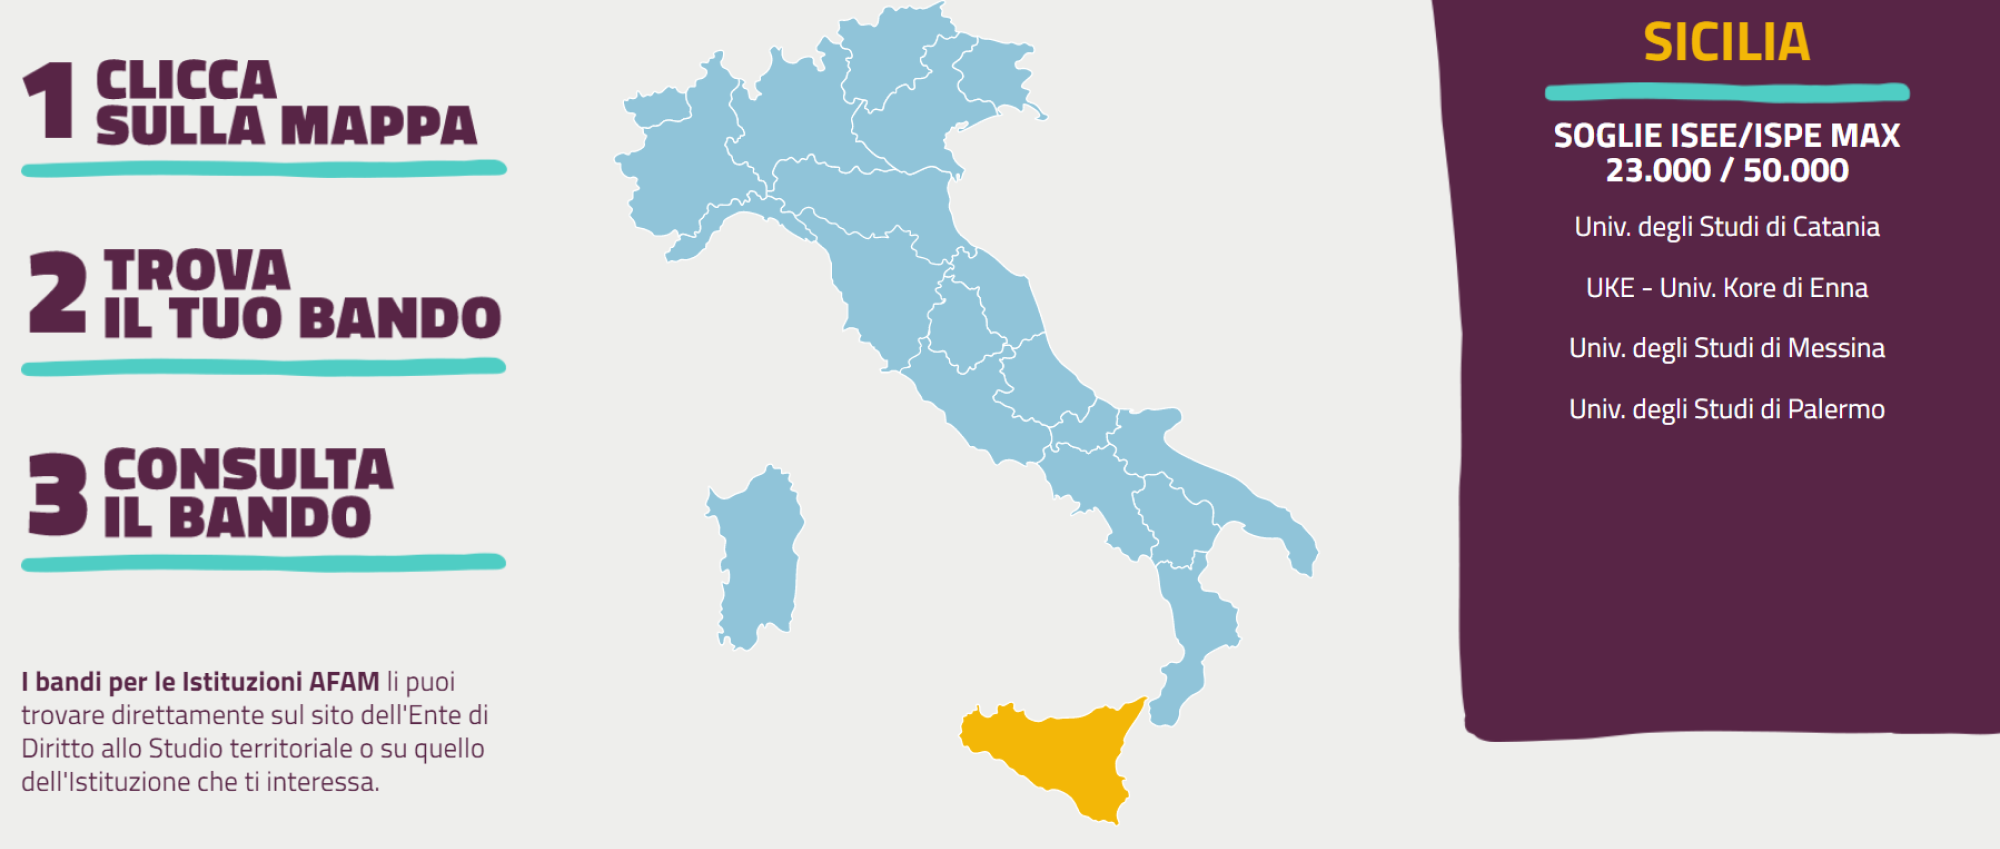 Карта регионов Италии с указанием стипендиальных организаций DSU и условий получения стипендии